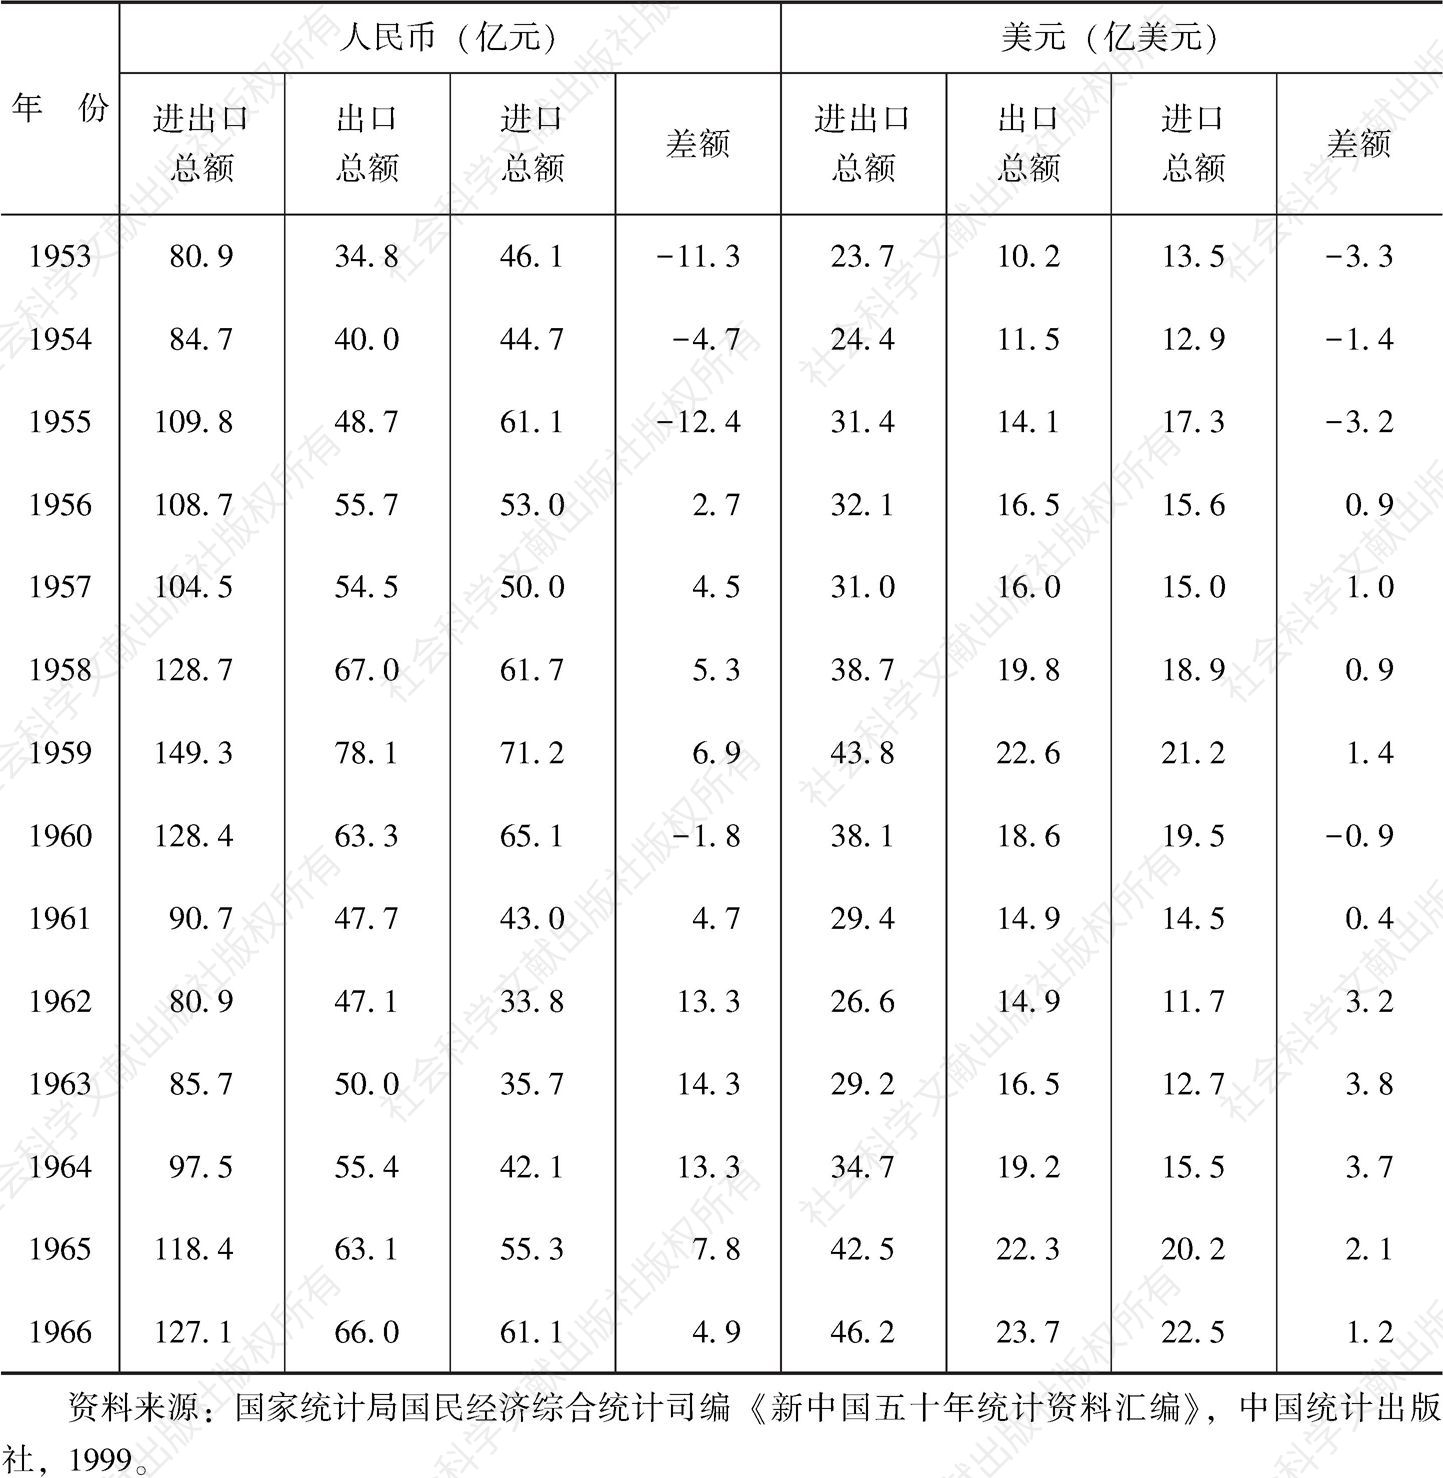 表2.1 1953～1966年中国进出口贸易总额